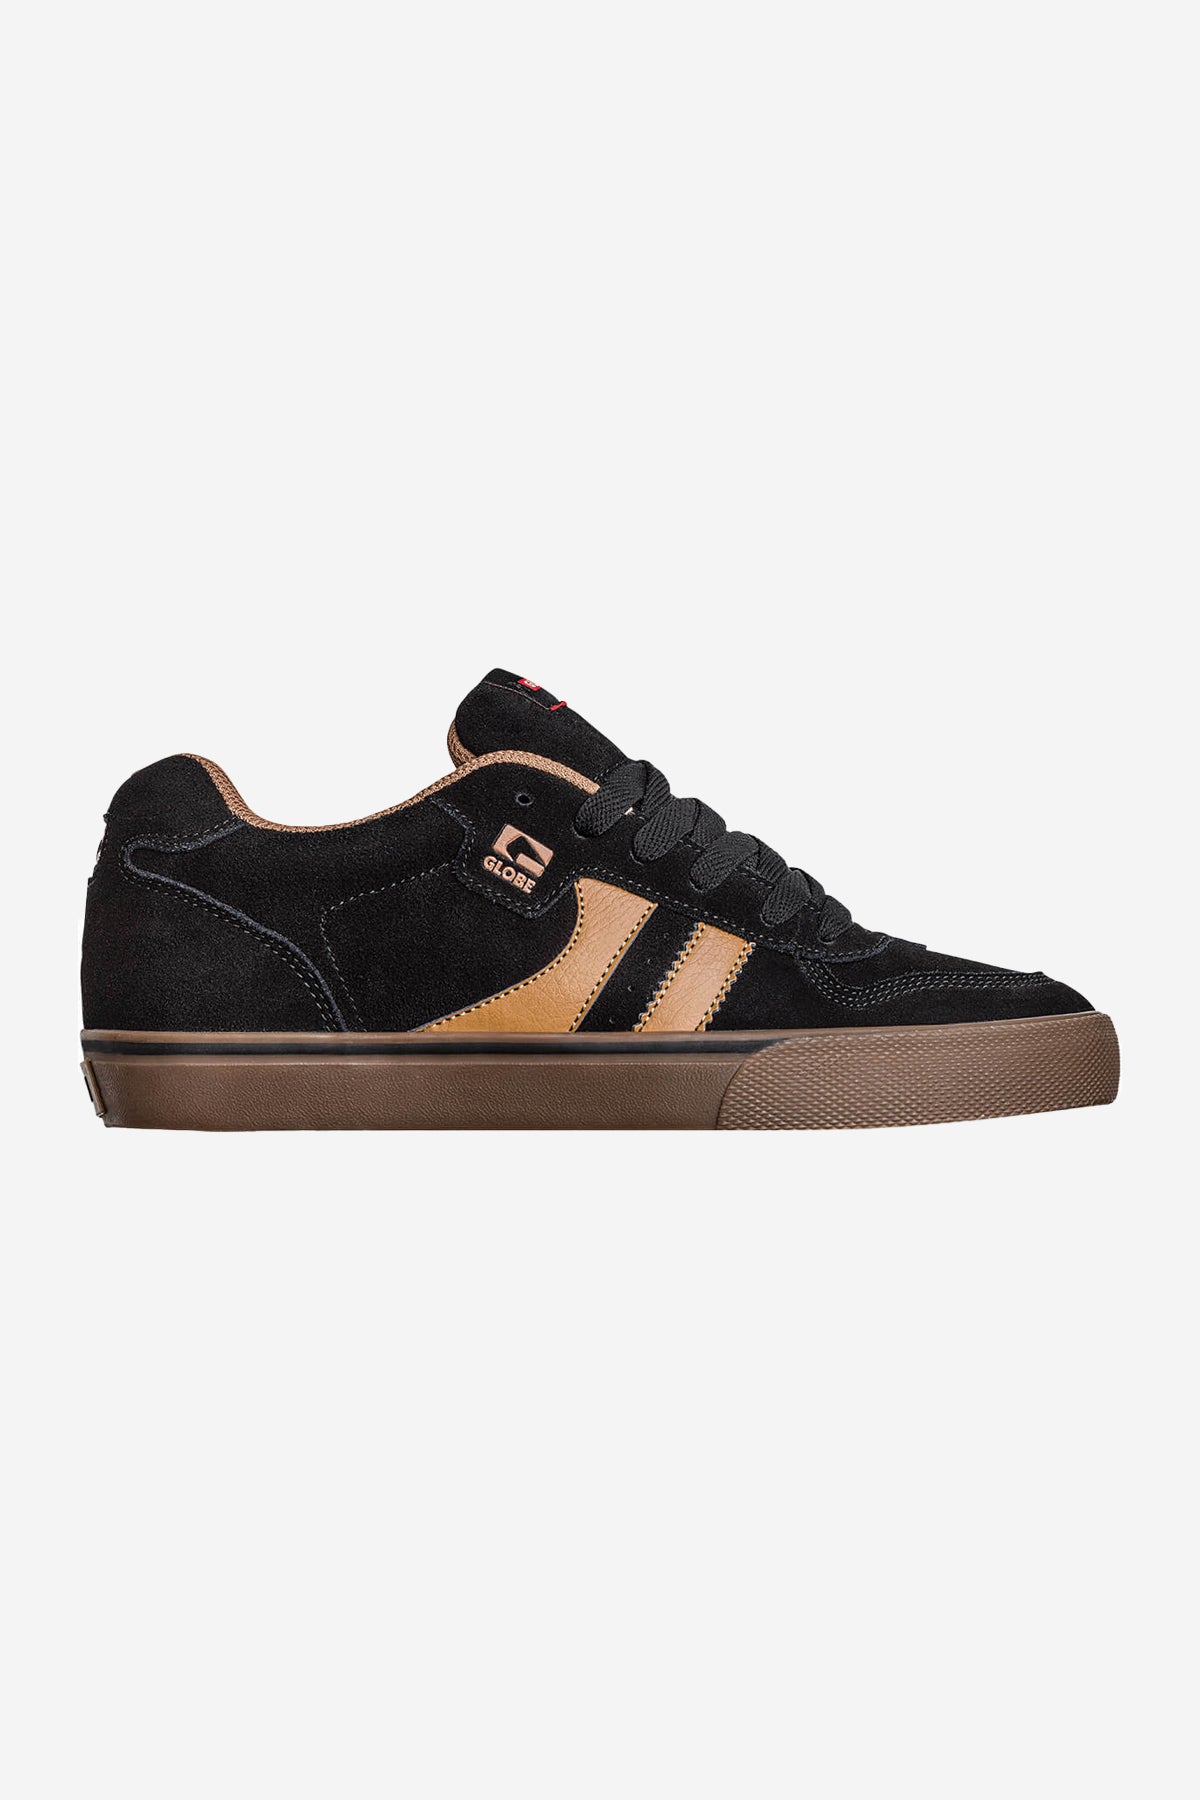 encore-2 negro marrón skateboard zapatos